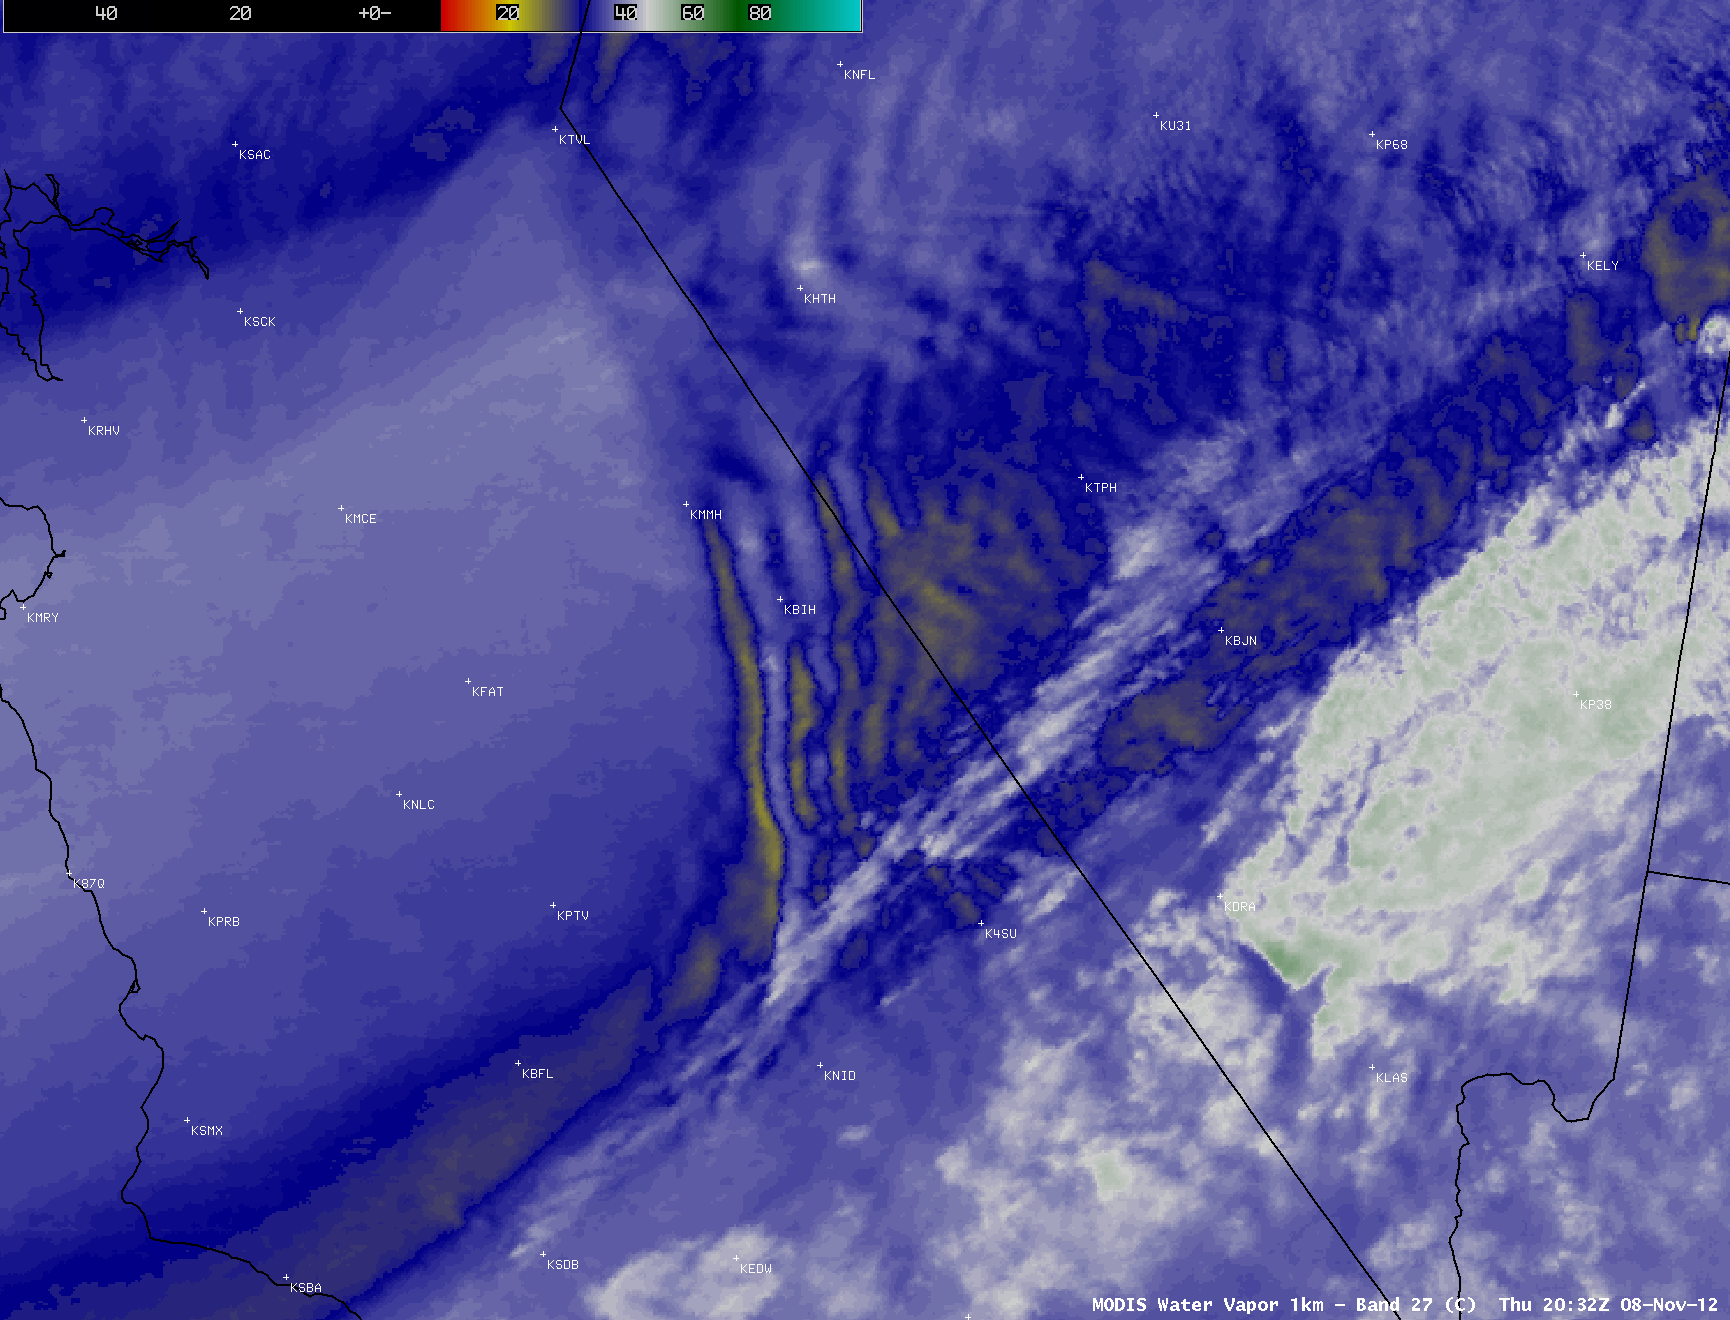 MODIS 6.5 Âµm water vapor channel, 6.5 Âµm visible channel. and 11.0 Âµm IR channel images